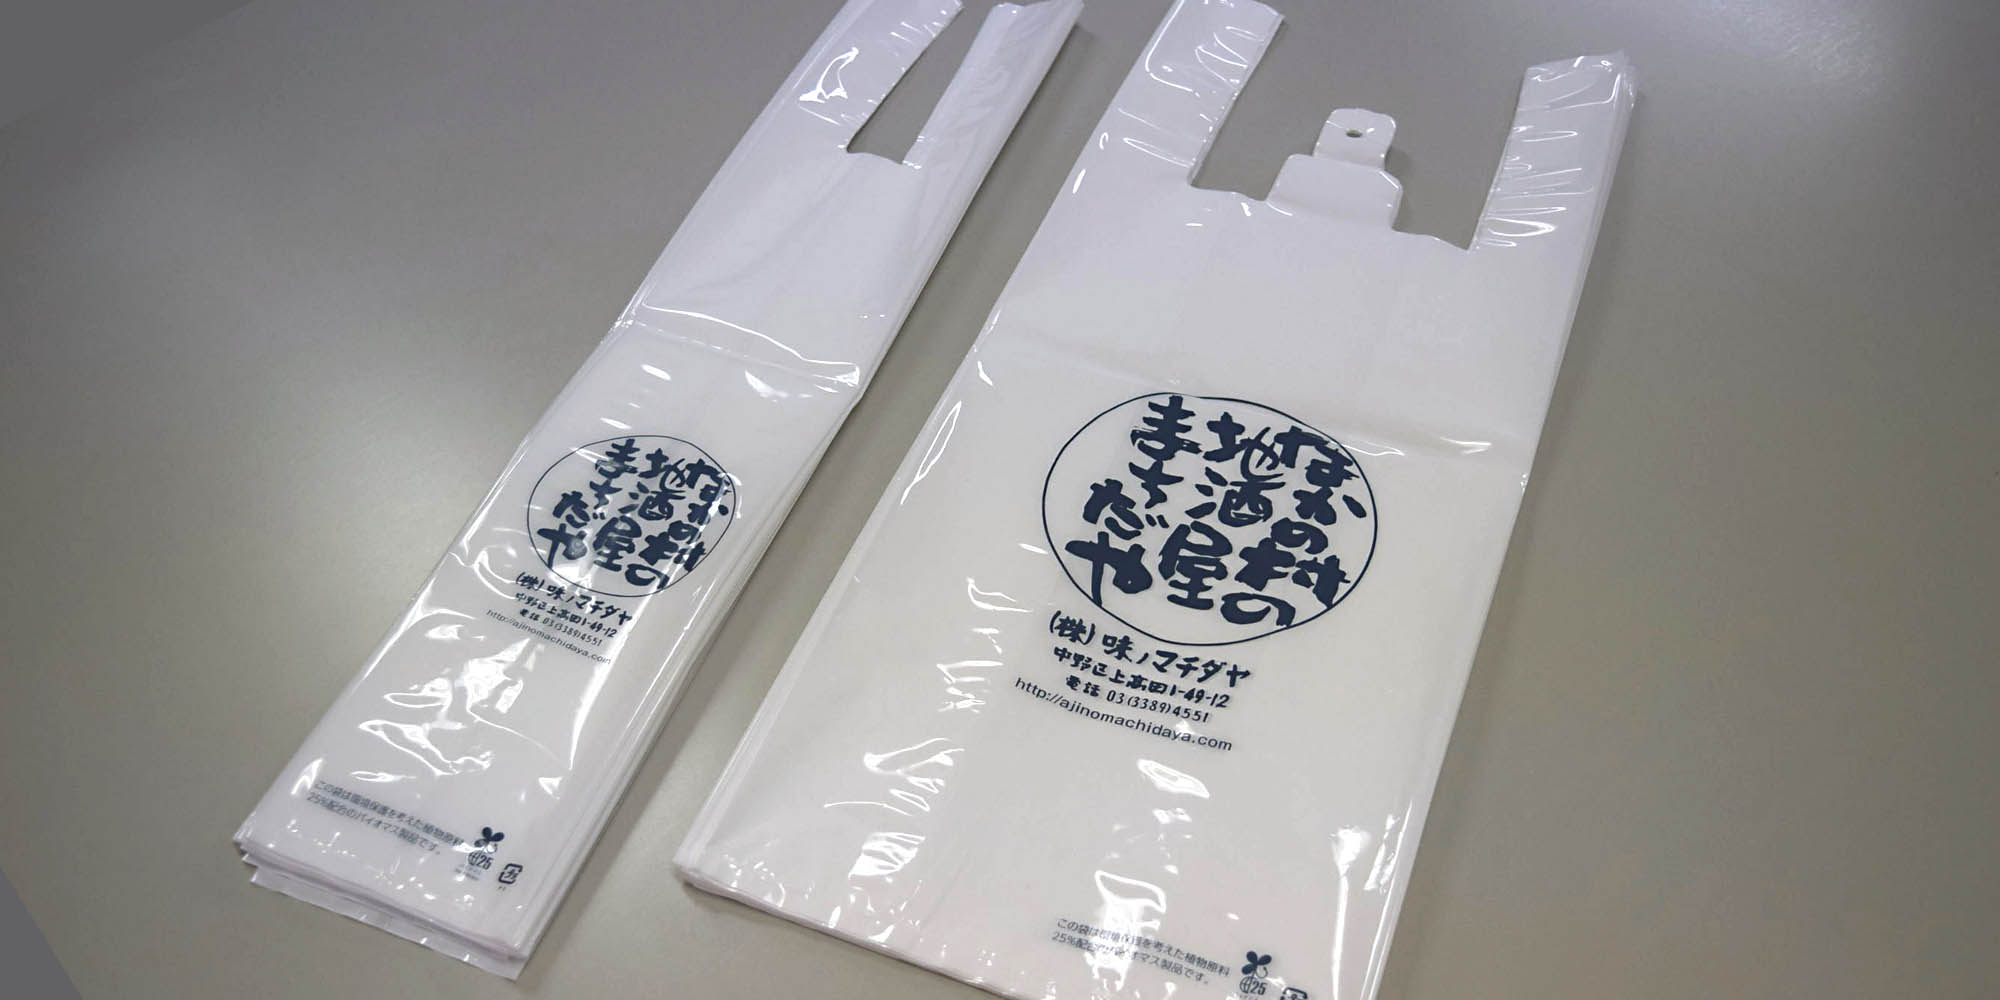 酒屋の持ち帰り用レジ袋。１本用と２本用のラインナップで、材質にバイオマスプラスチックを配合する事により、無料配布が可能です。